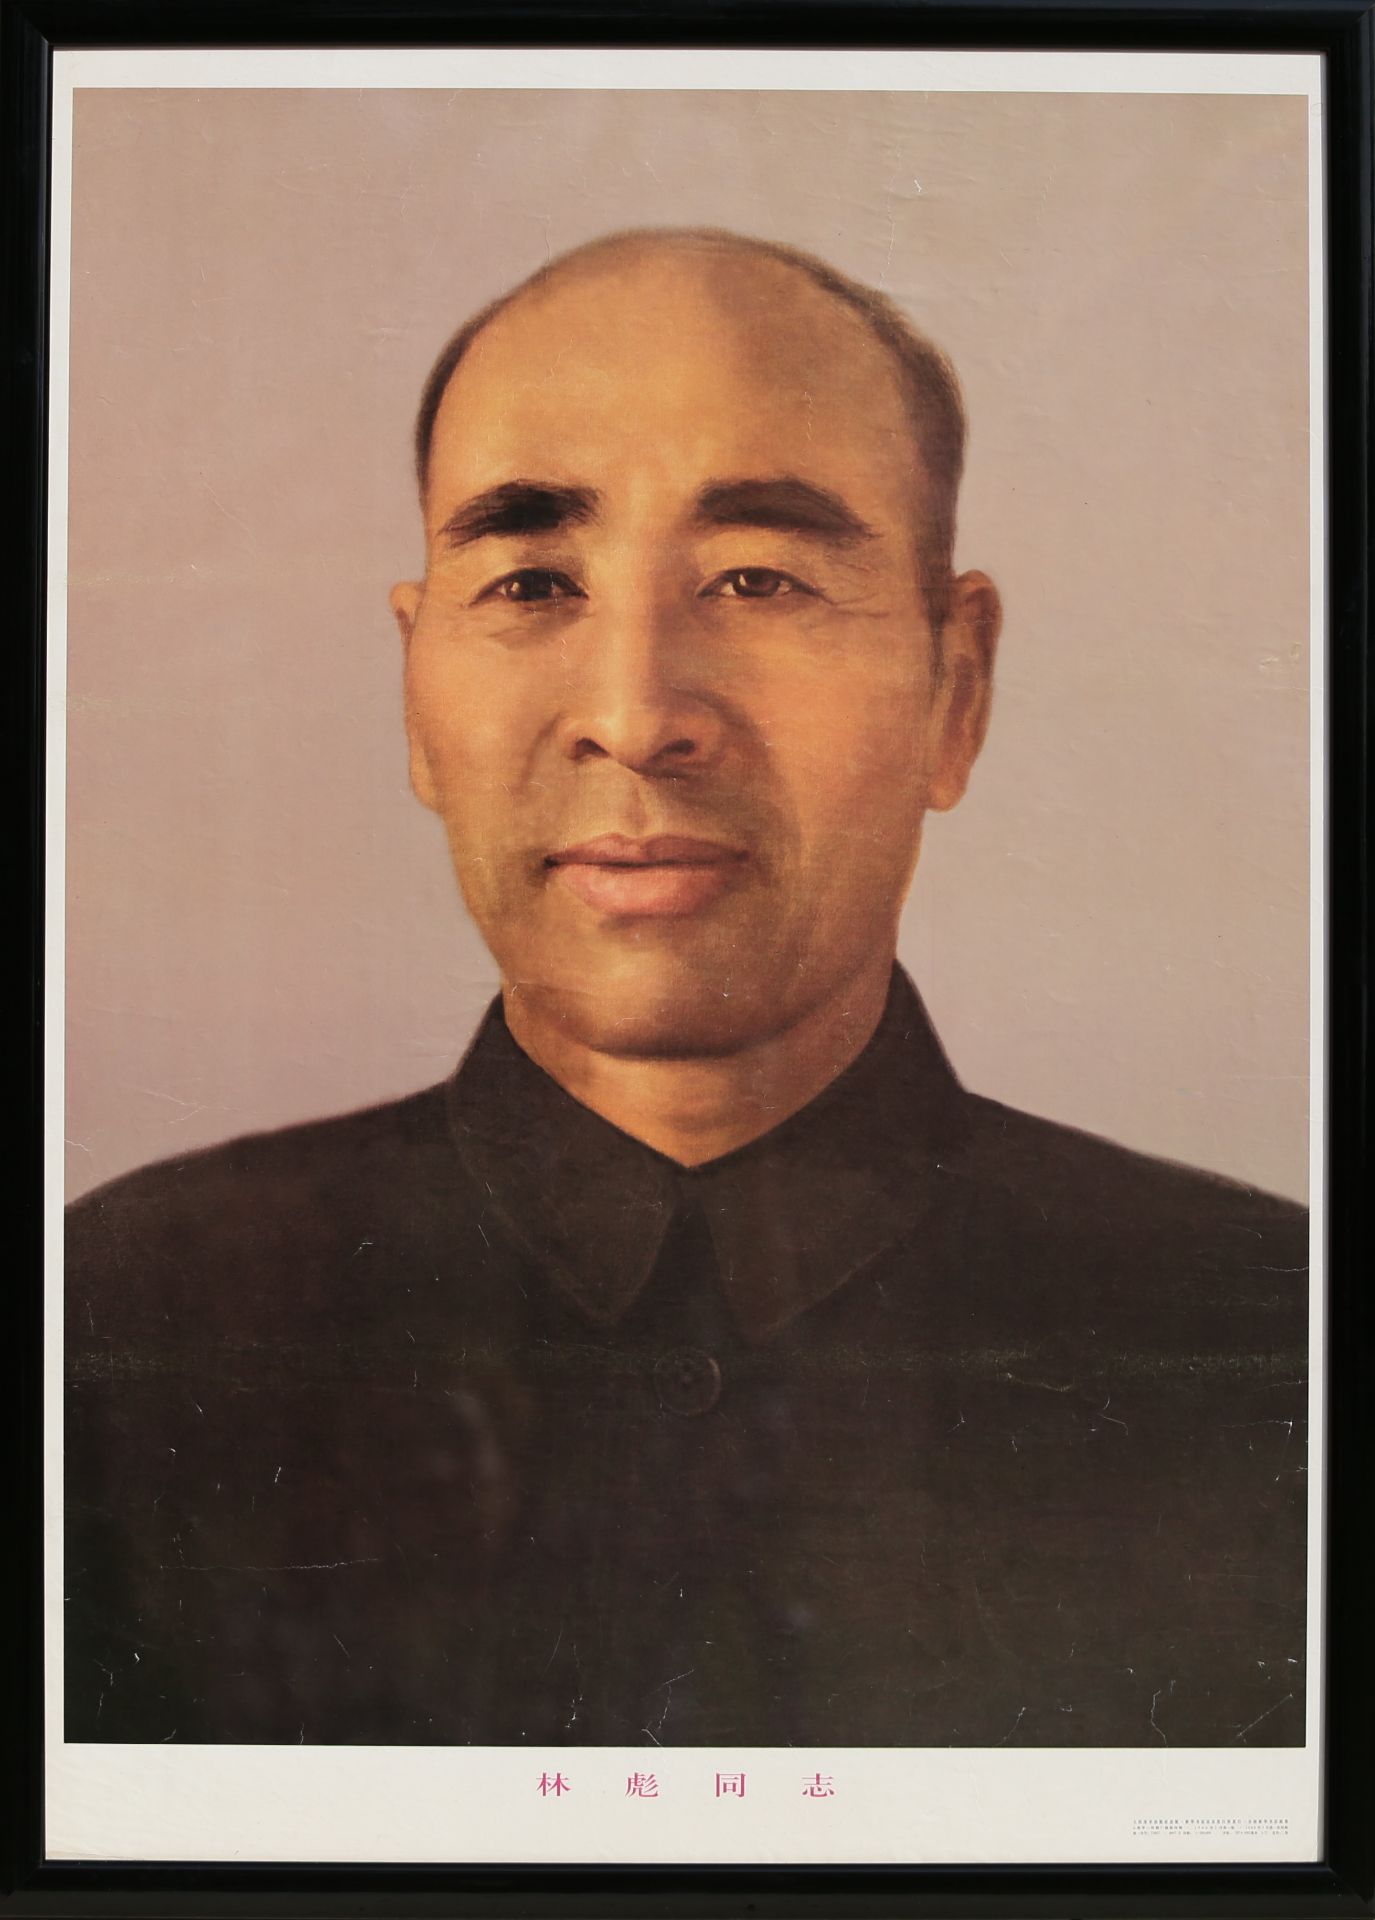 17 Affiches de propagande de la révolution culturelle chinoise Encadrée 75cm x 52cm - Bild 9 aus 17